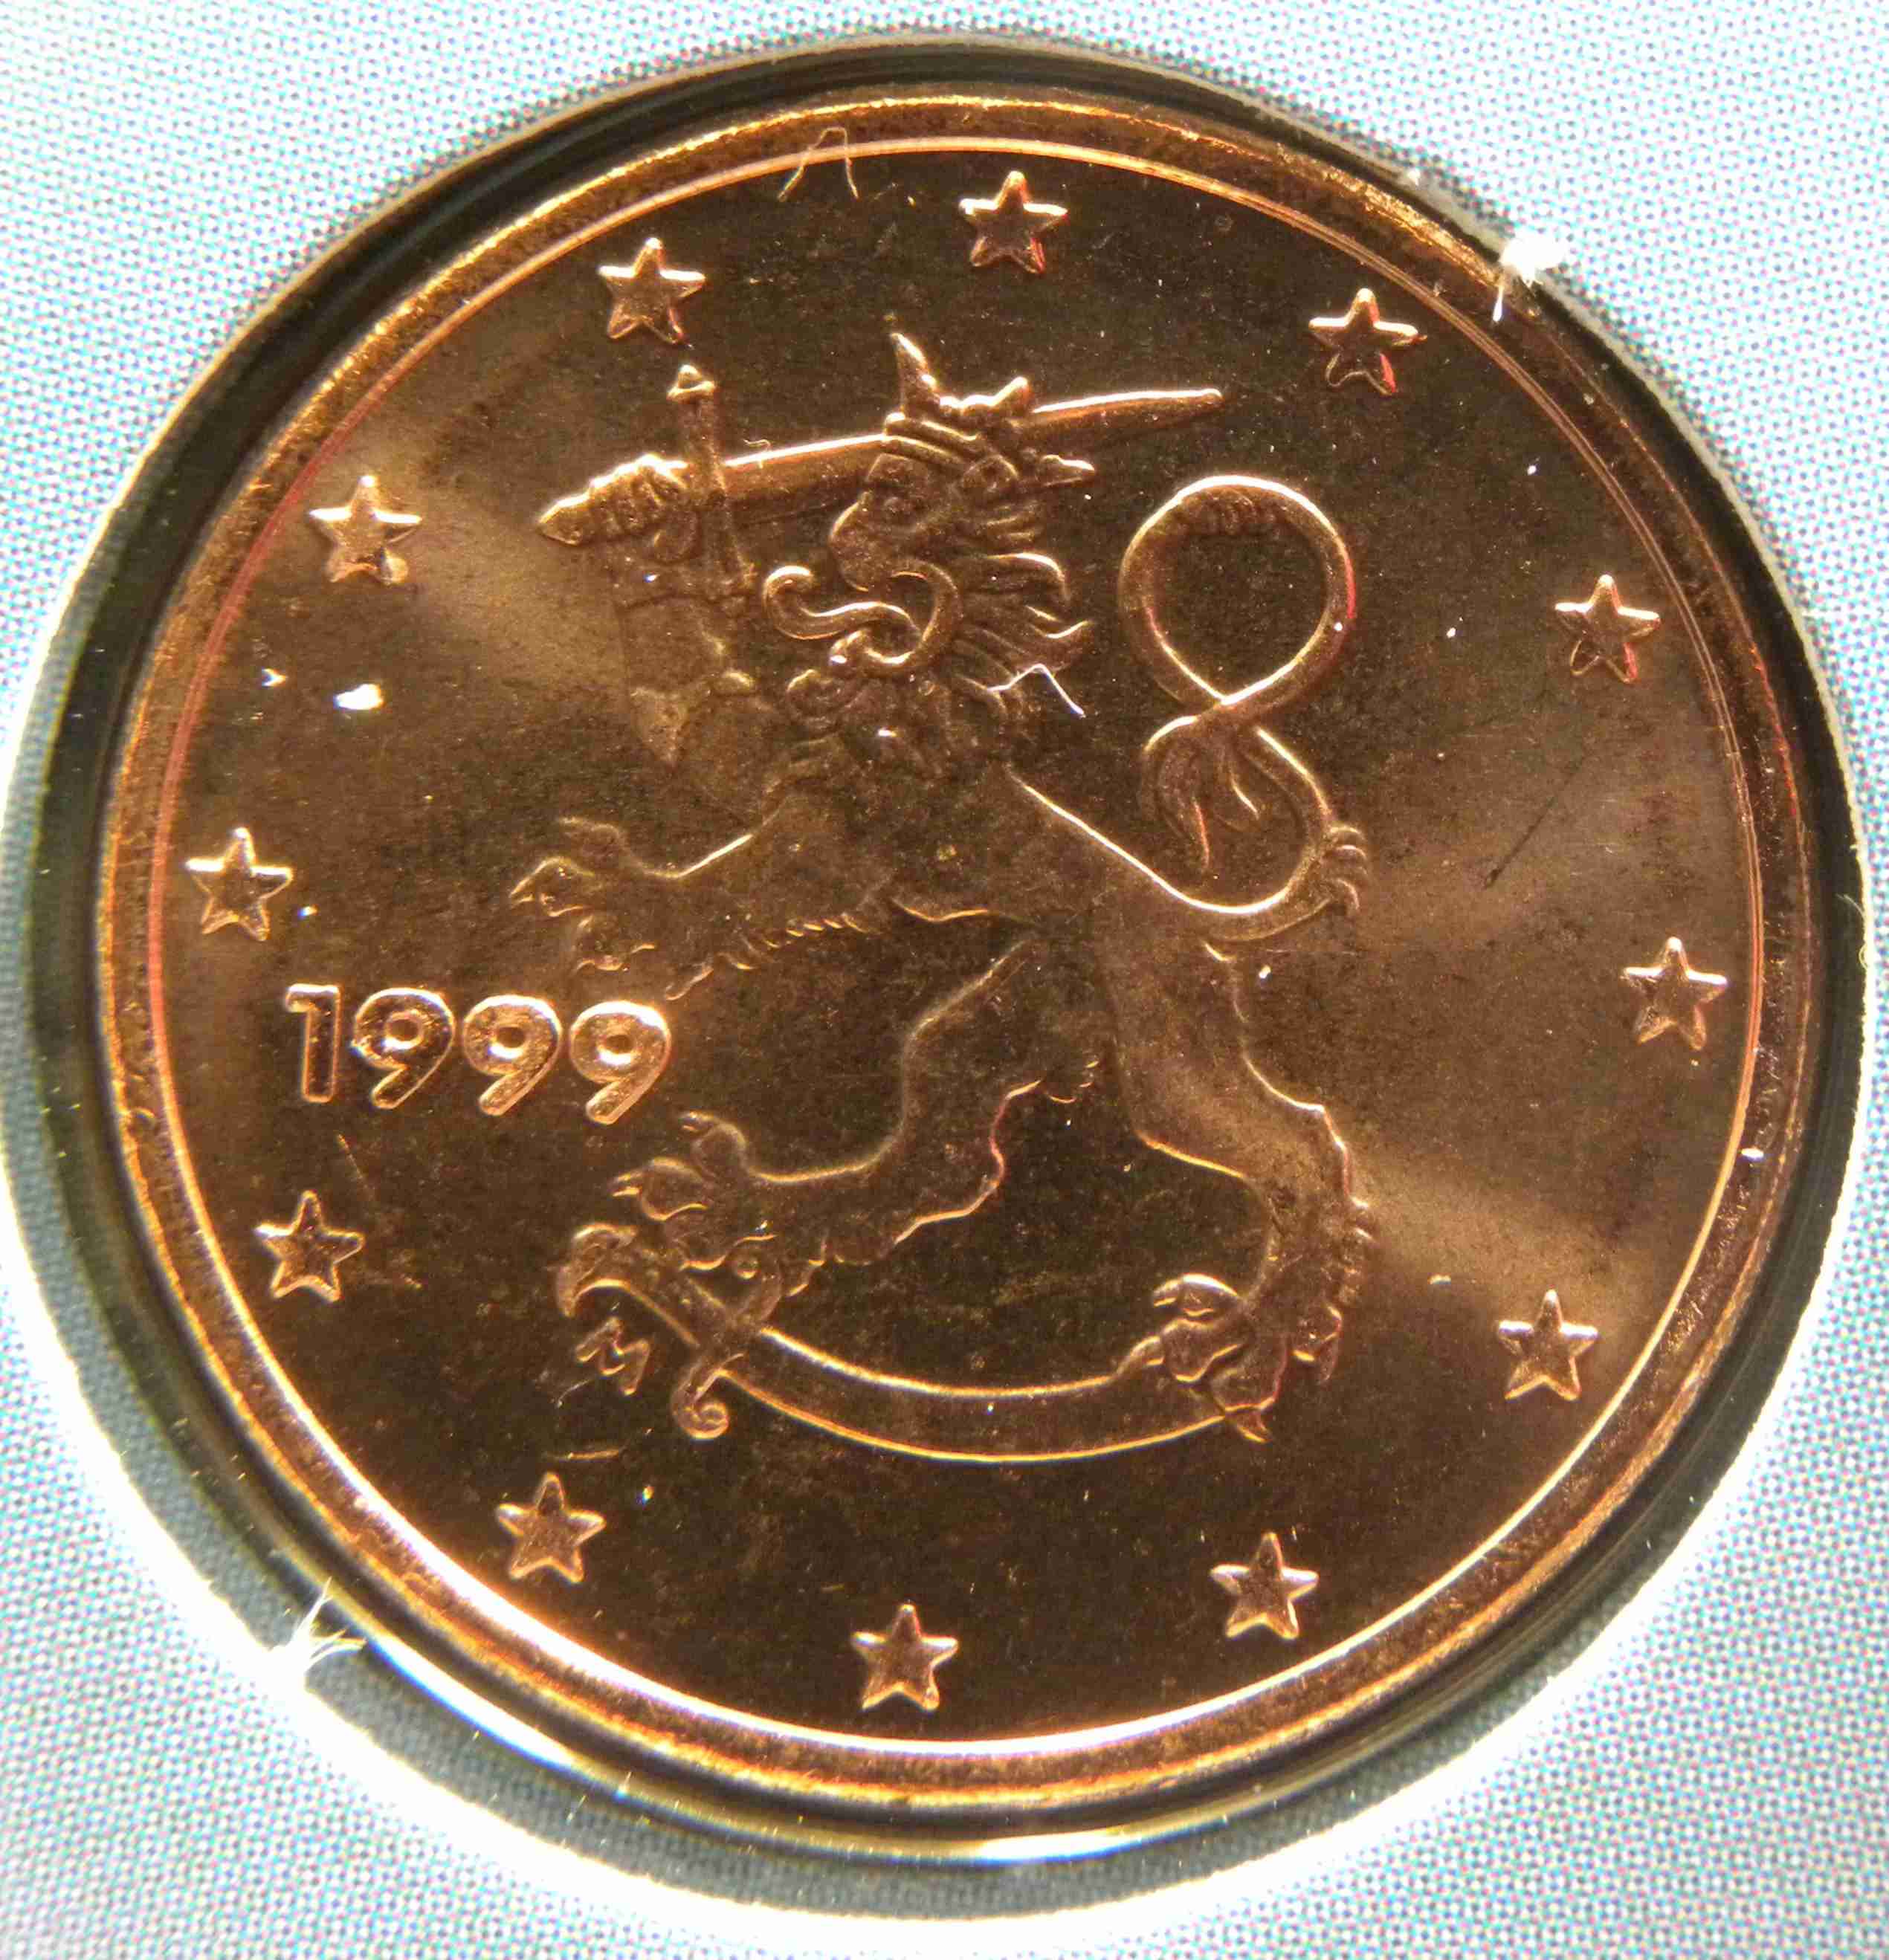 Finnland 1 Cent Münze 1999 - euro-muenzen.tv - Der Online Euromünzen